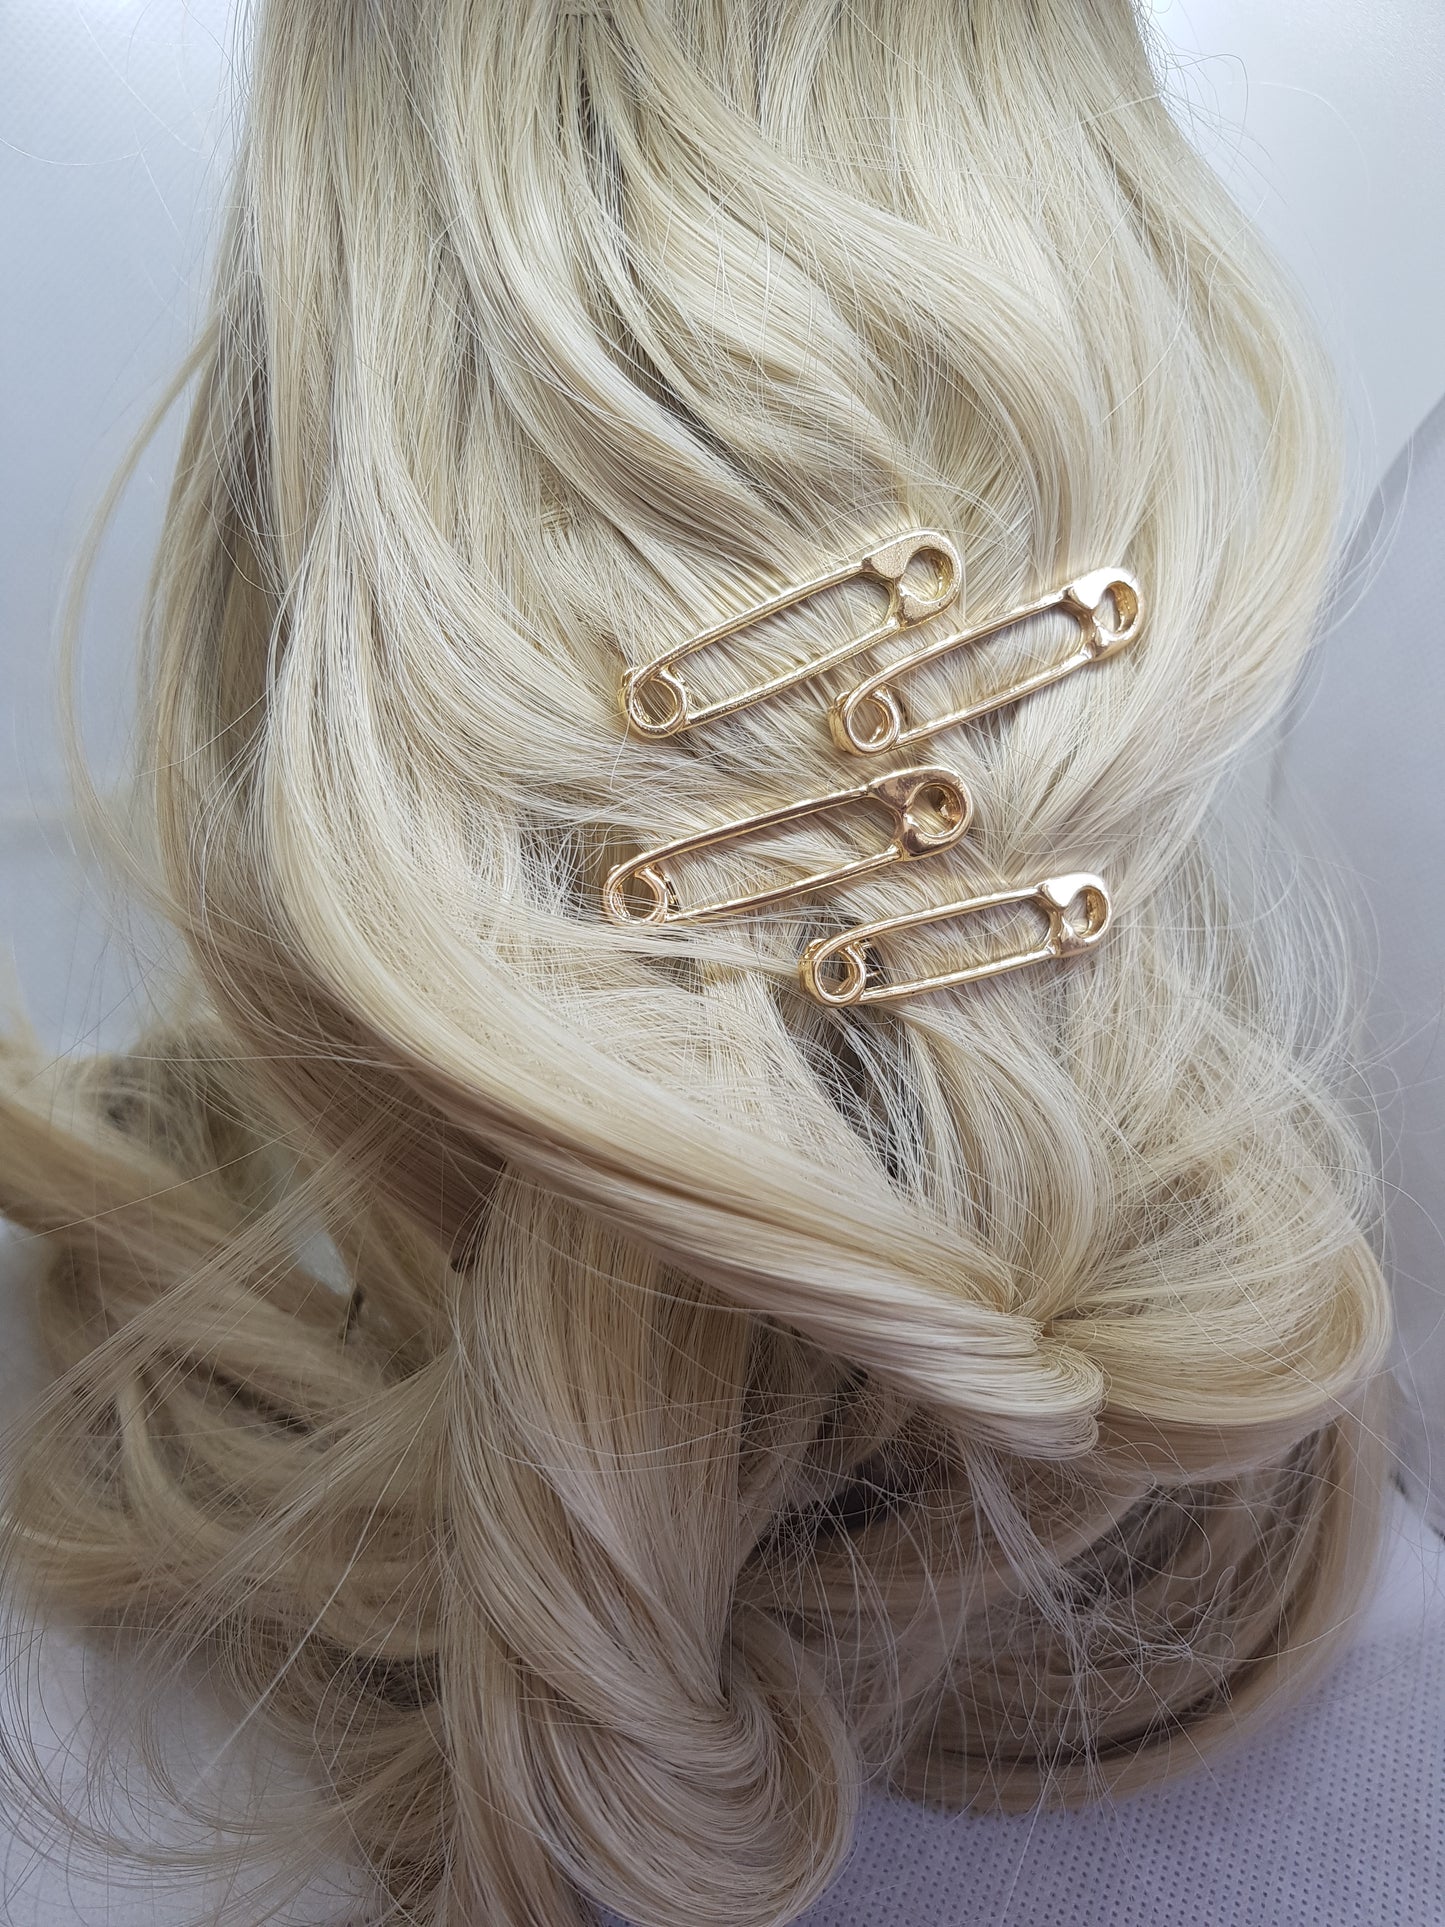 fun gold hair accessories